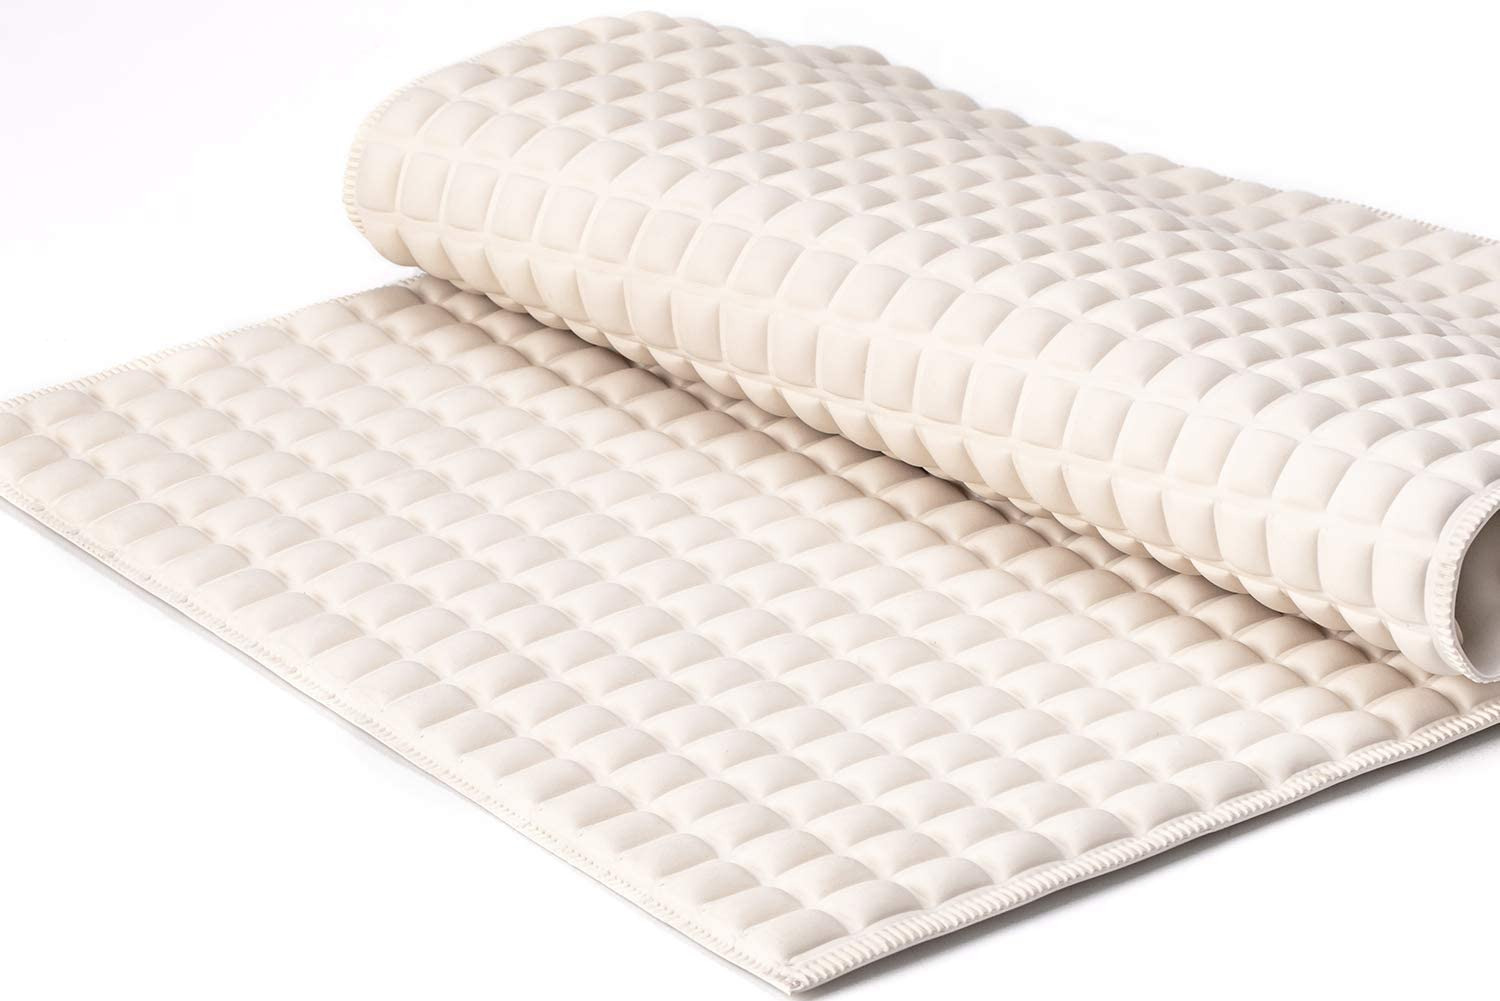 Premium Air Cushion Bathtub Mat With 800+ Air-filled Cells Provide Unprecedented